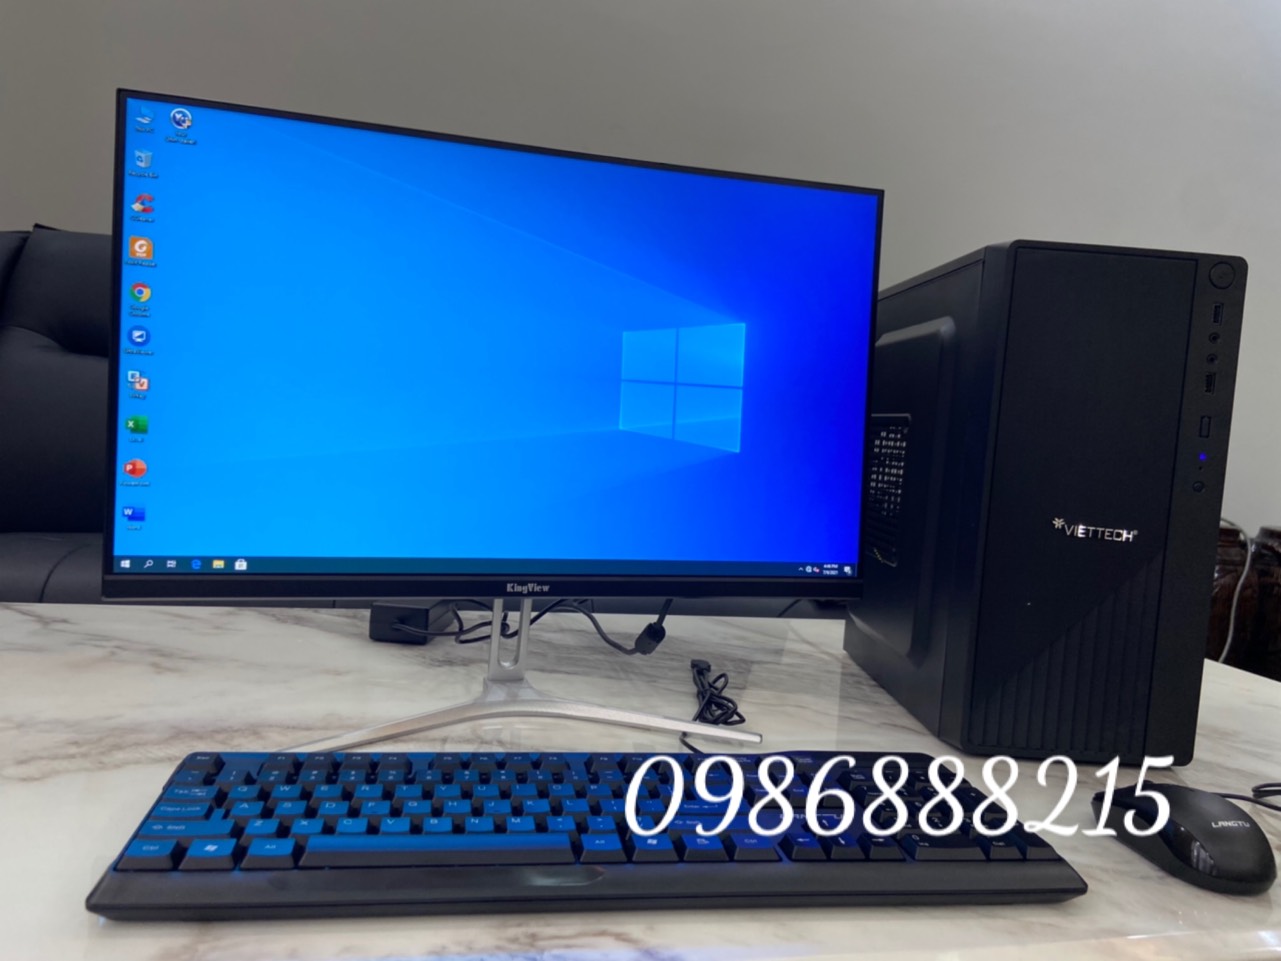 Bộ máy tính để bàn Dell Optiplex Core i5 3470, Ram 8gb, SSD 120GB Và Màn hình máy tính Dell 21.5 inch - Hàng Nhập Khẩu